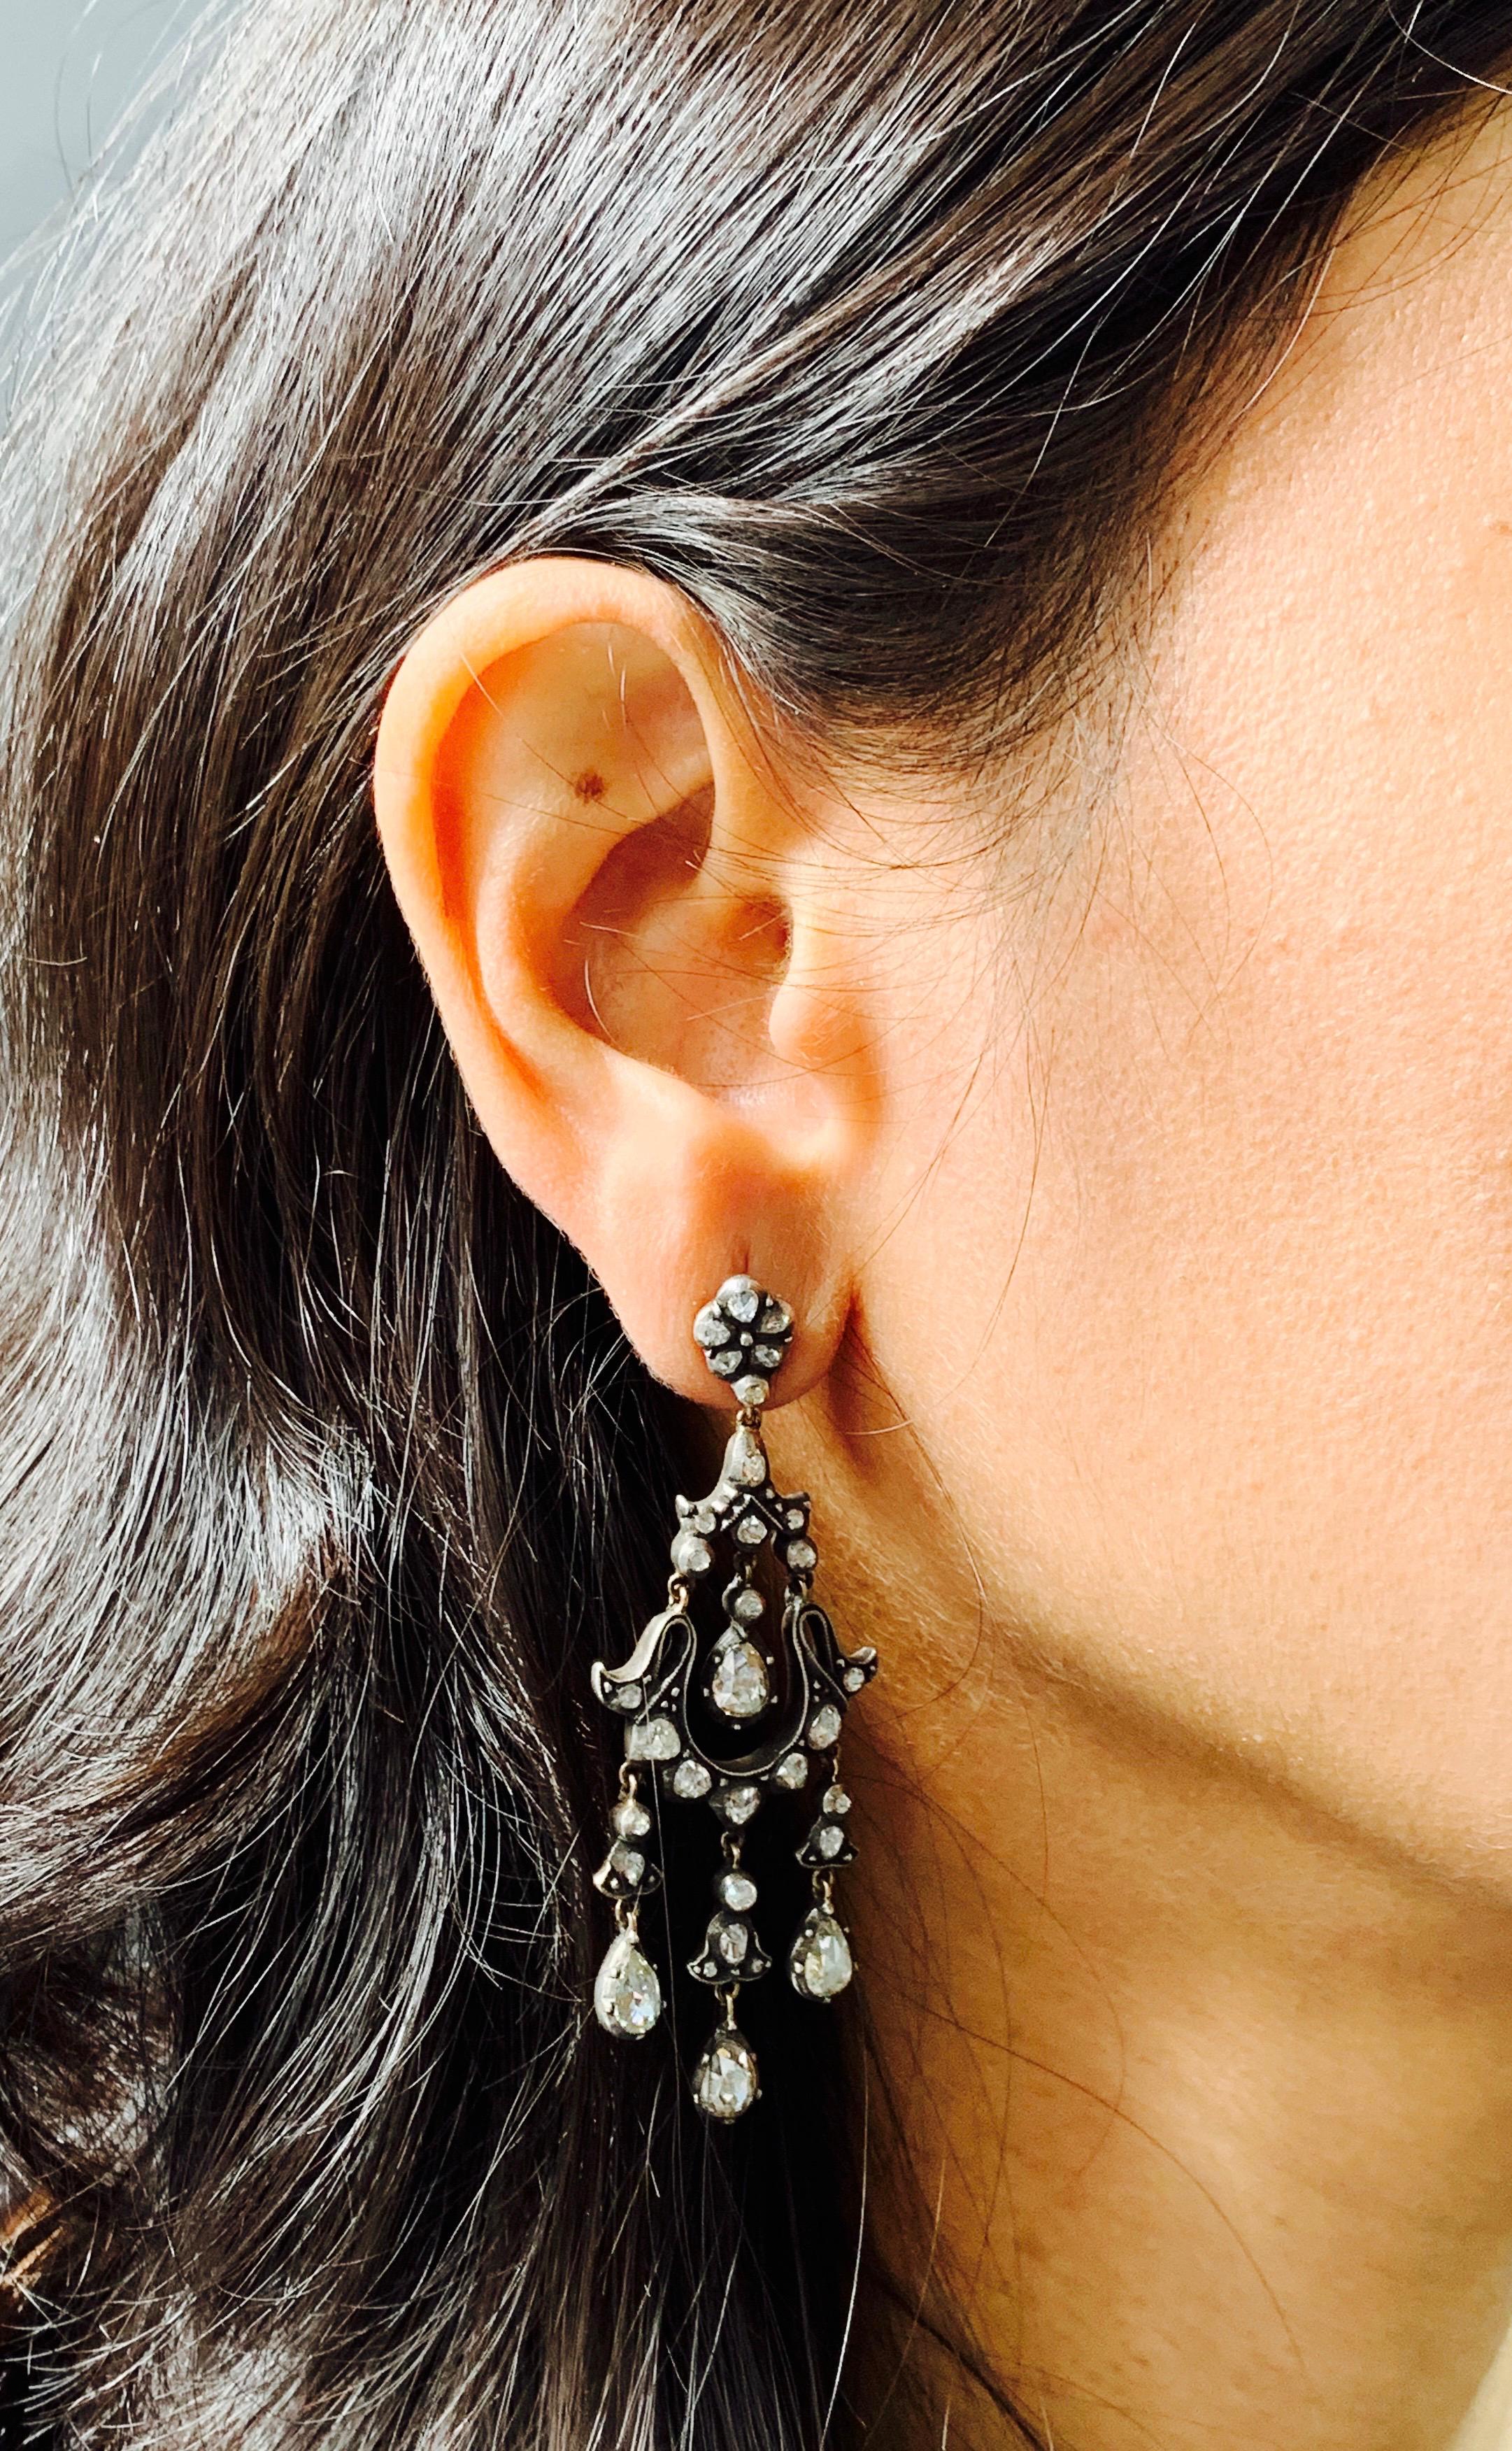 6 Carat Rose Cut Diamond Antique Style Chandelier Earrings in 18 Karat Gold For Sale 4